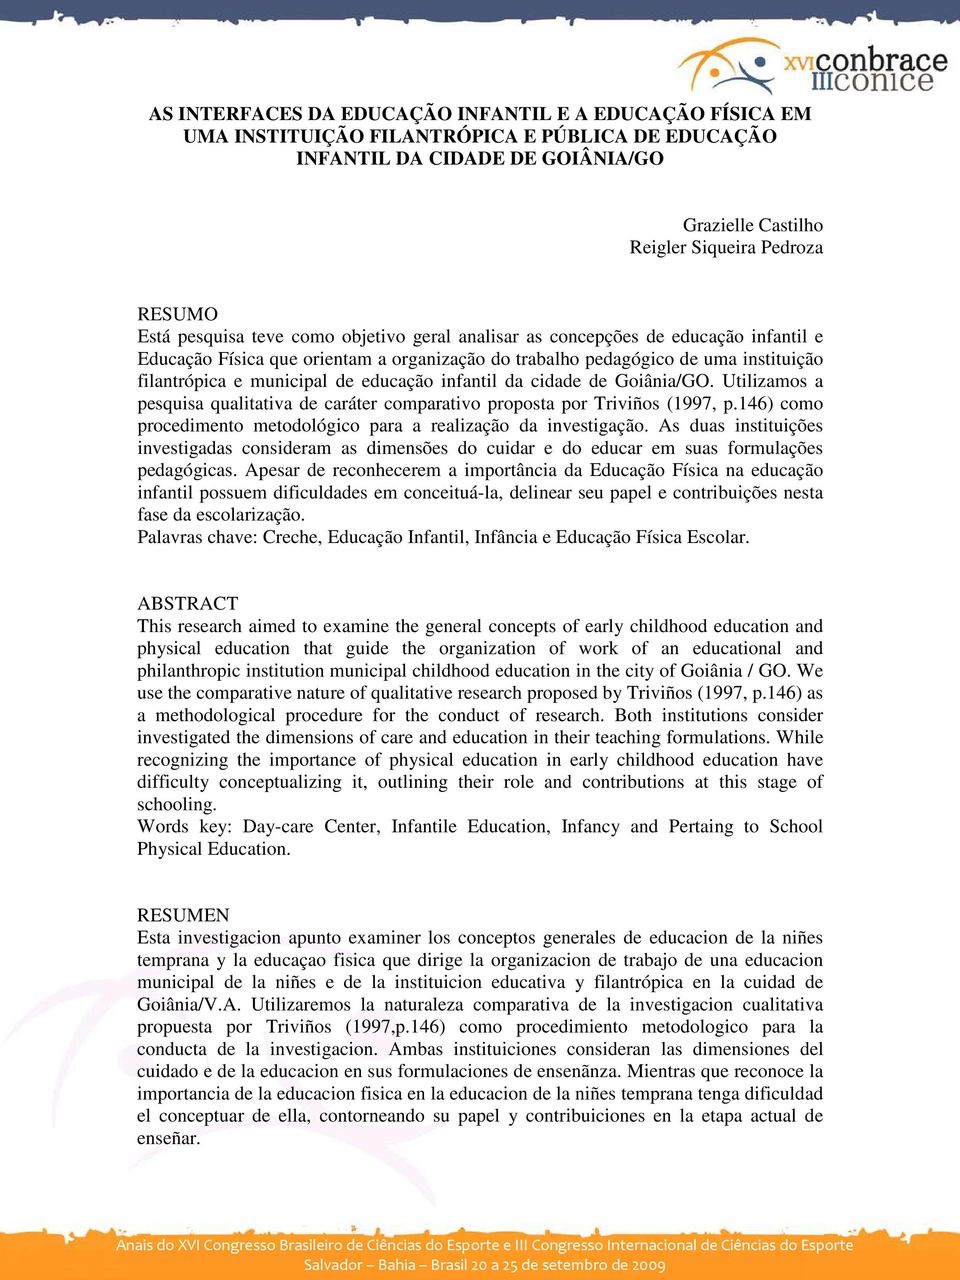 educação infantil da cidade de Goiânia/GO. Utilizamos a pesquisa qualitativa de caráter comparativo proposta por Triviños (1997, p.